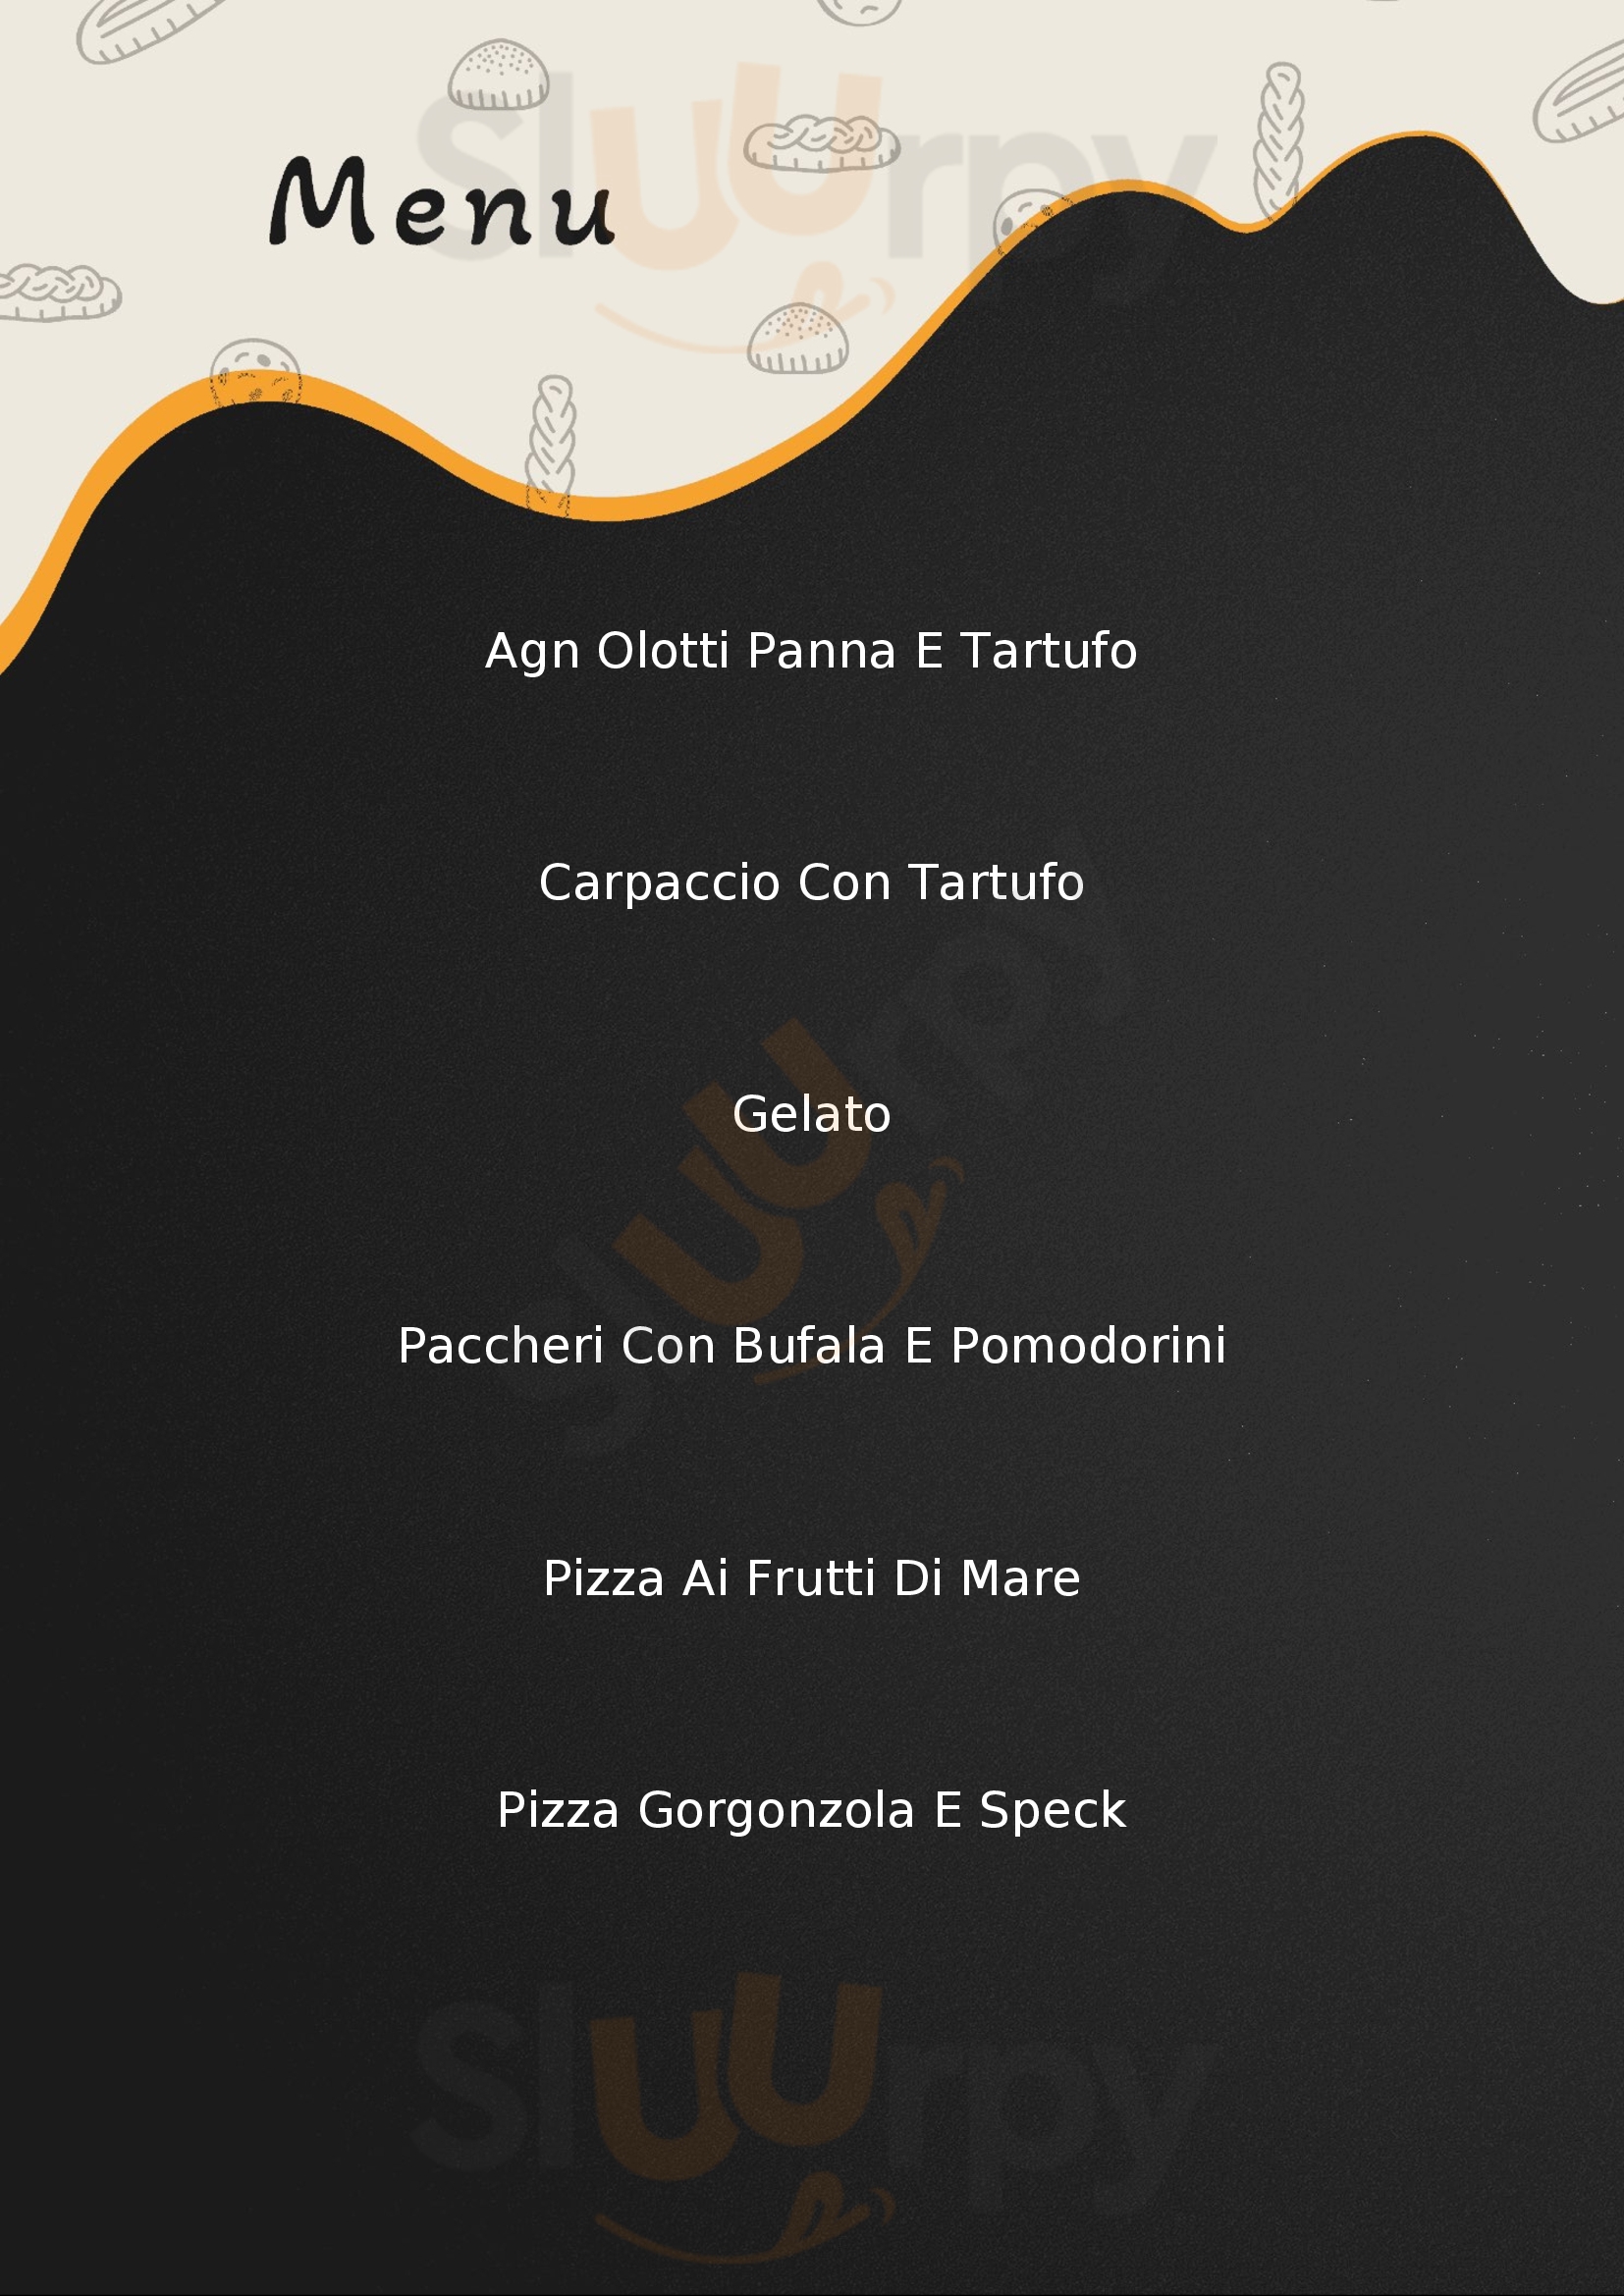 MedEATerraneo Ristorante Pizzeria Civitanova Marche menù 1 pagina